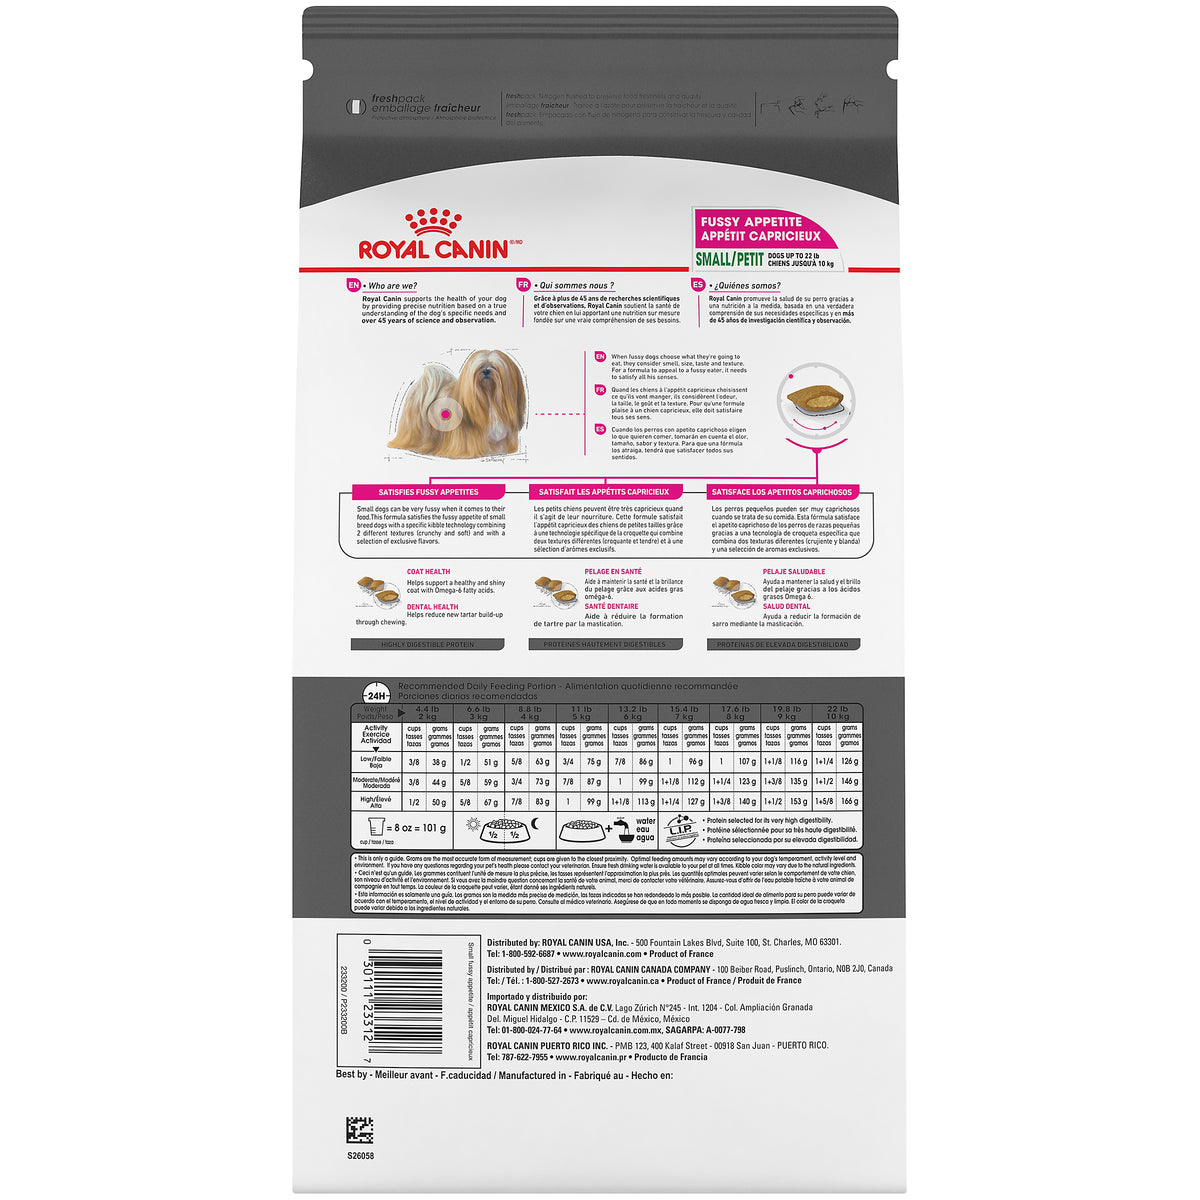 Royal Canin - PETIT APPÉTIT CAPRICIEUX – nourriture sèche pour chiens (3.5lb)